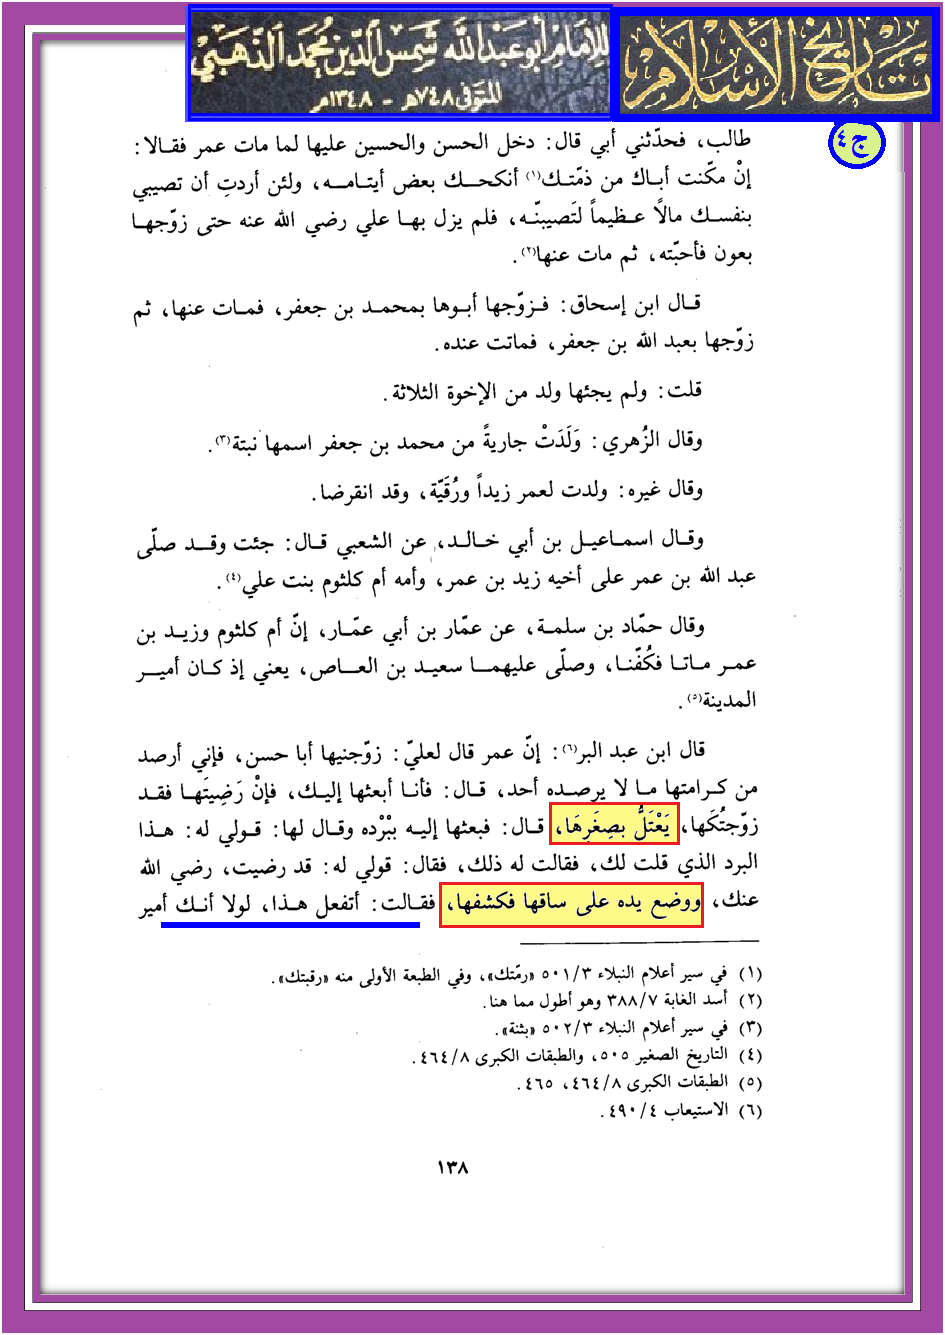 مدونة ابن النجف Ibenalnajaf لماذا وصفت طفلة الخليفة عمر بأنه شيخ